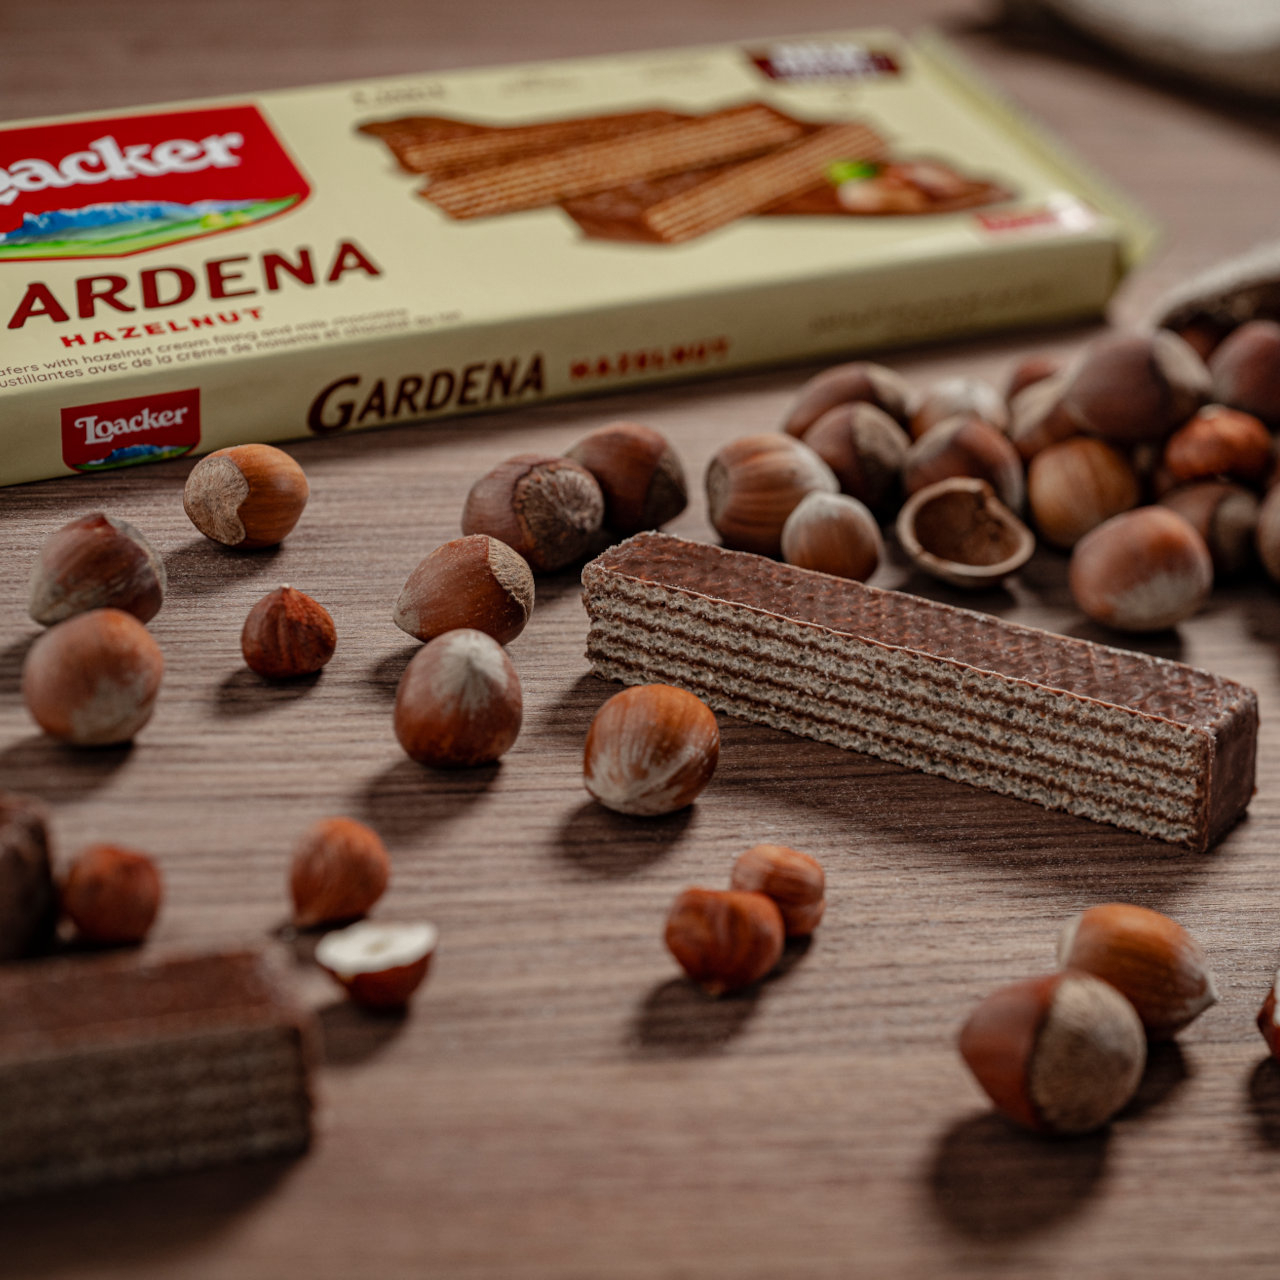 Wafer Gardena Hazelnut – with Italian hazelnuts